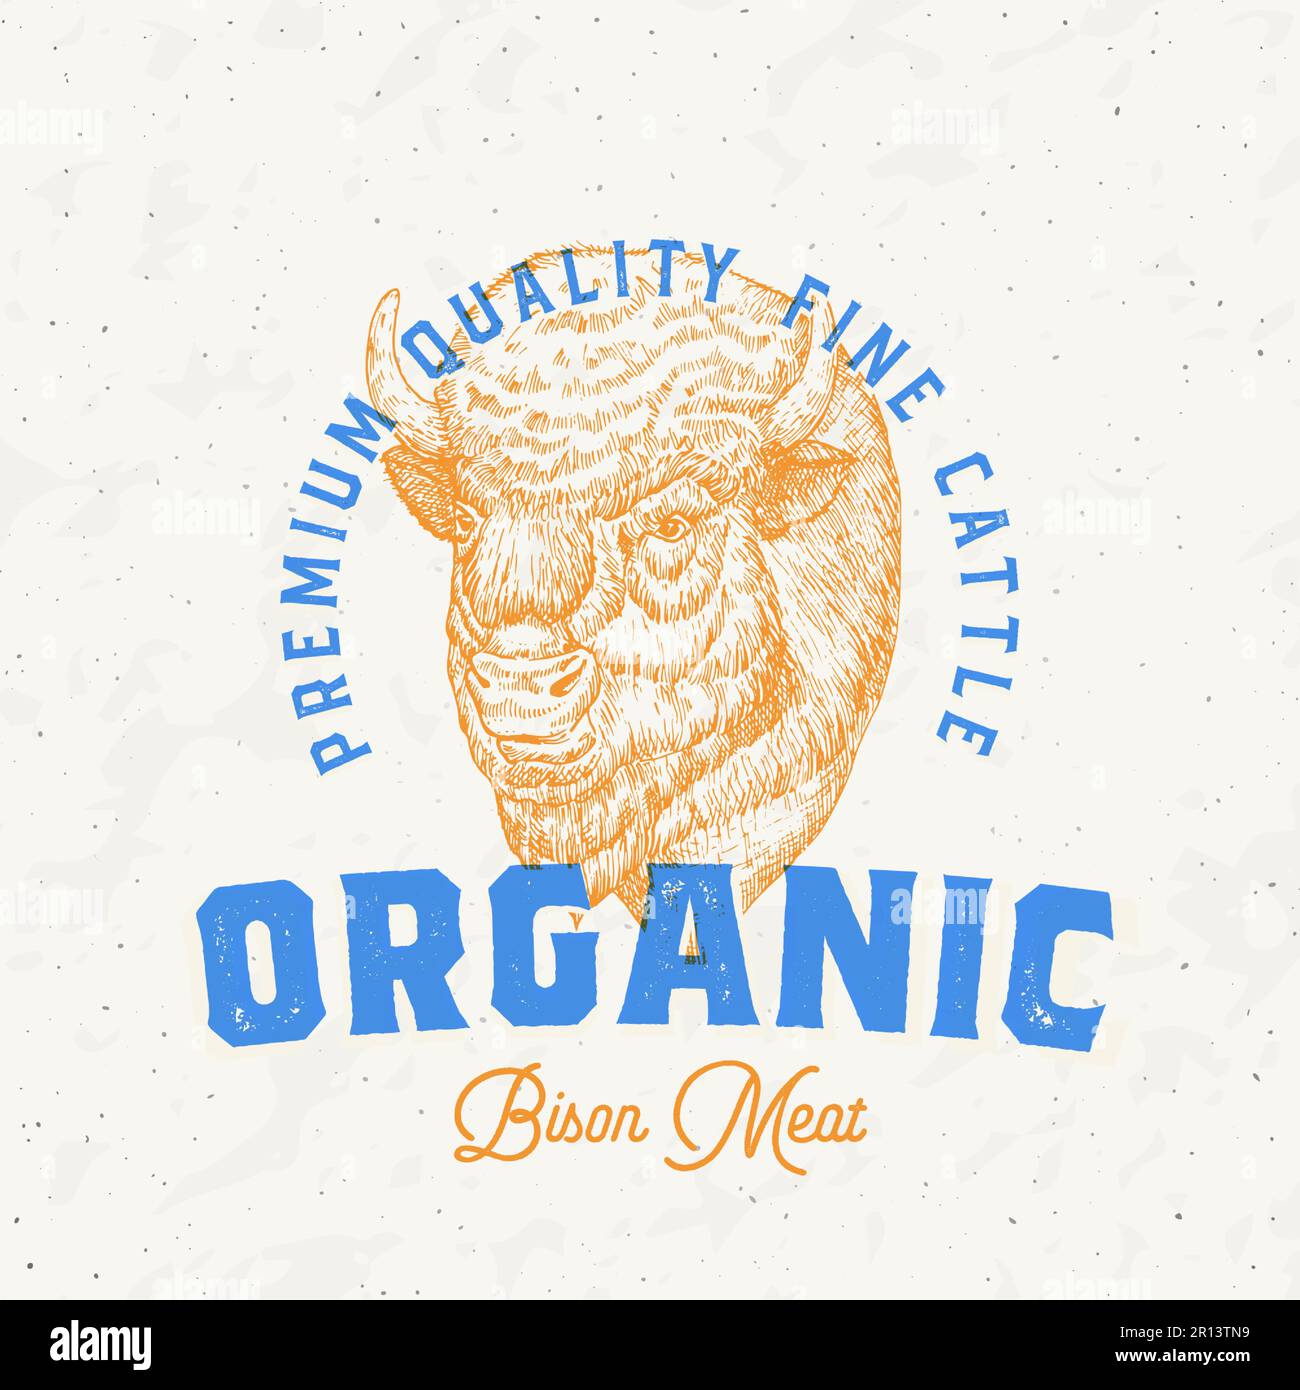 Risograph Style Bison Meat Farm Retro Logo-Vorlage. Handgezeichnete Buffalo-Rinder-Gesichtszeichnung mit Retro-Typographie. Vintage Steaks Sketch Emblem Stock Vektor